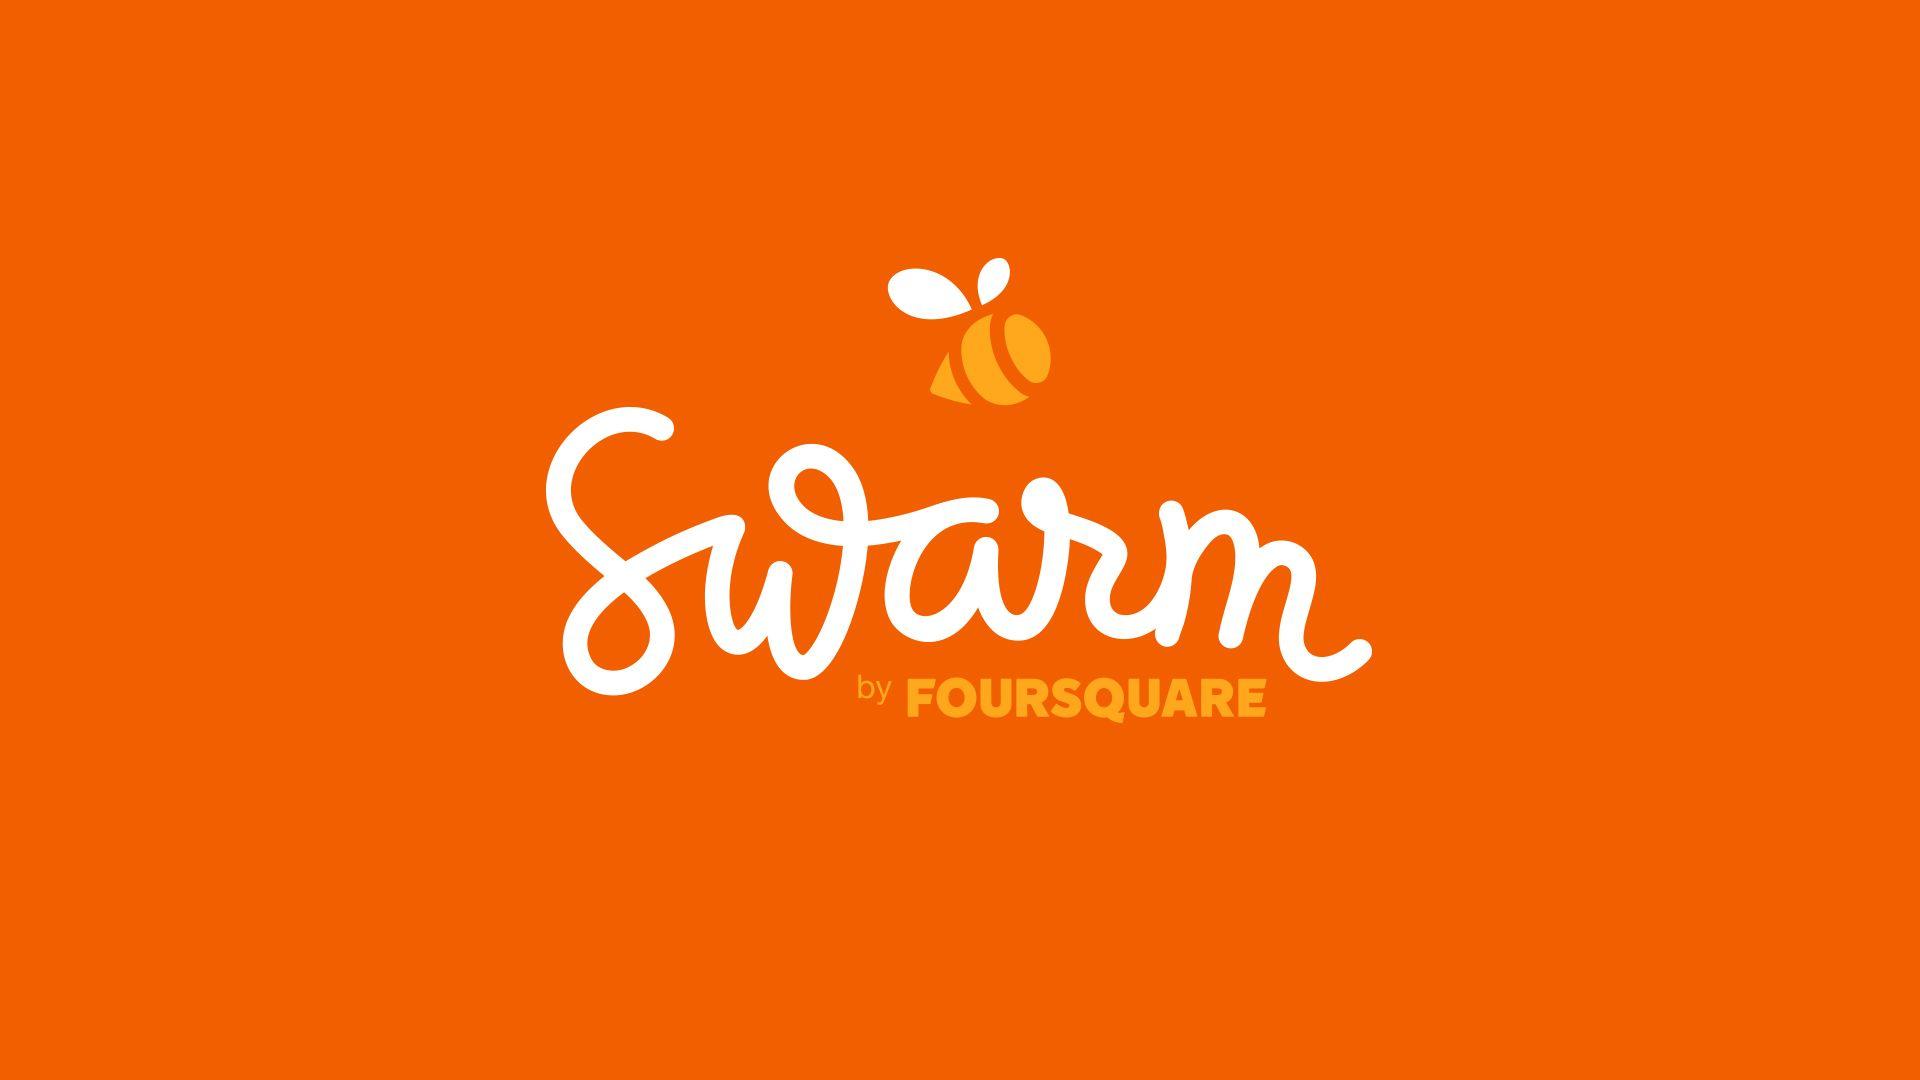 Swarm Logo - Swarm by Foursquare — Davenport